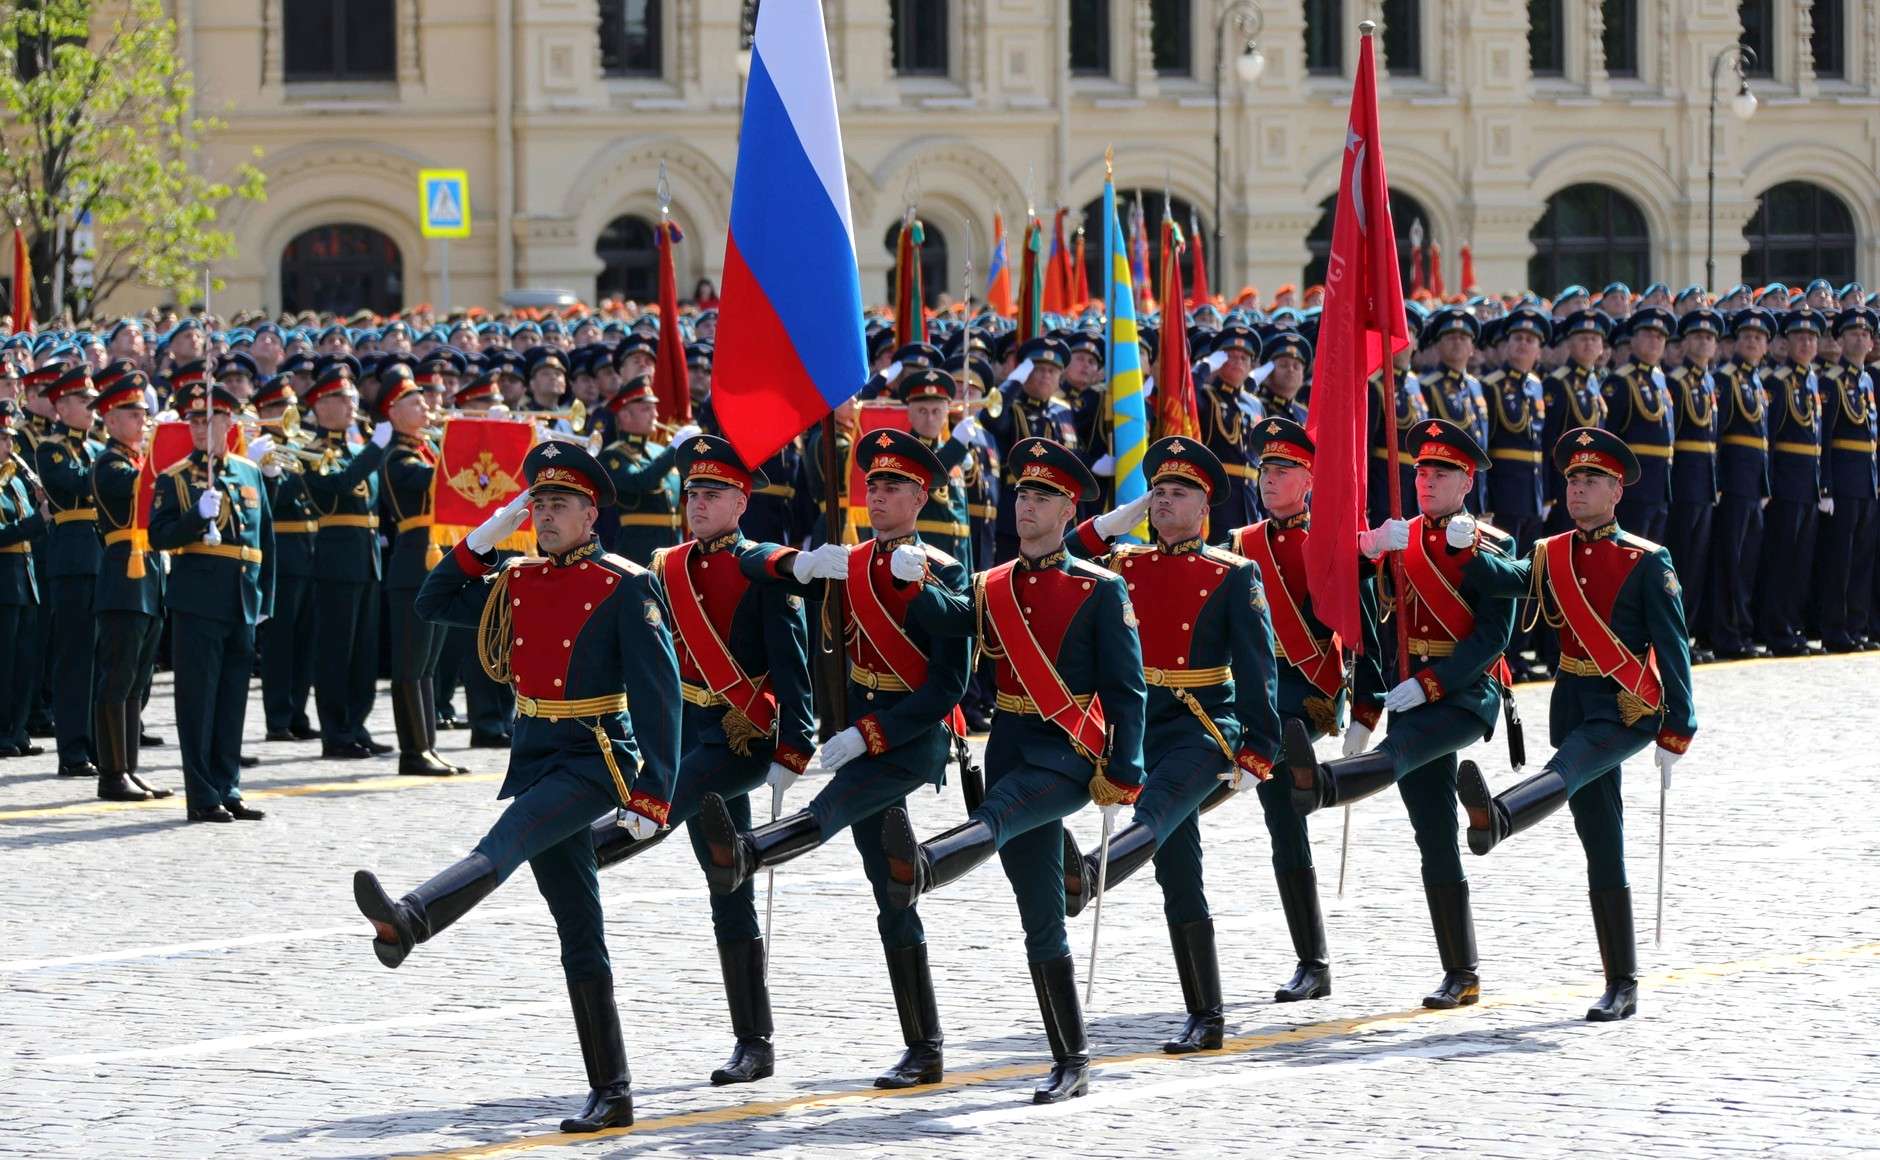 Έχει ανατρέψει την στρατιωτική ισορροπία Ρωσίας-ΗΠΑ η Μόσχα;